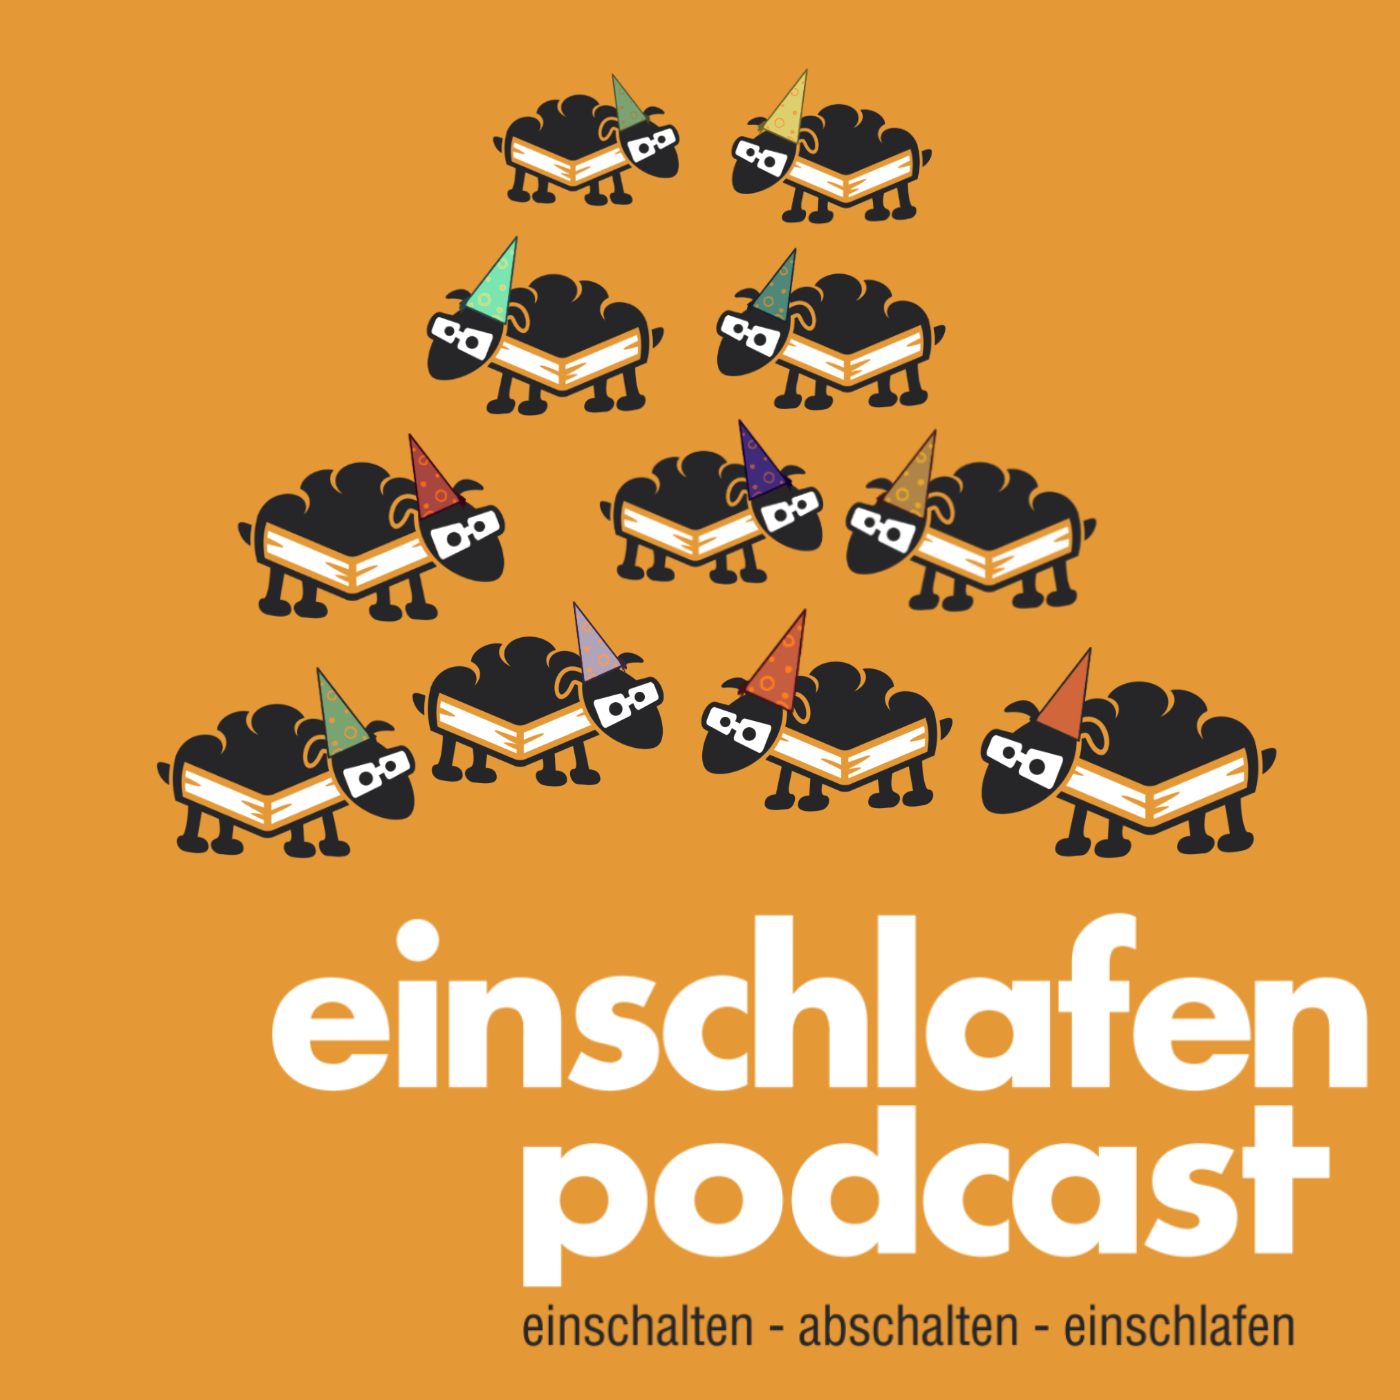 11 Jahre Einschlafen Podcast - Episodenbild